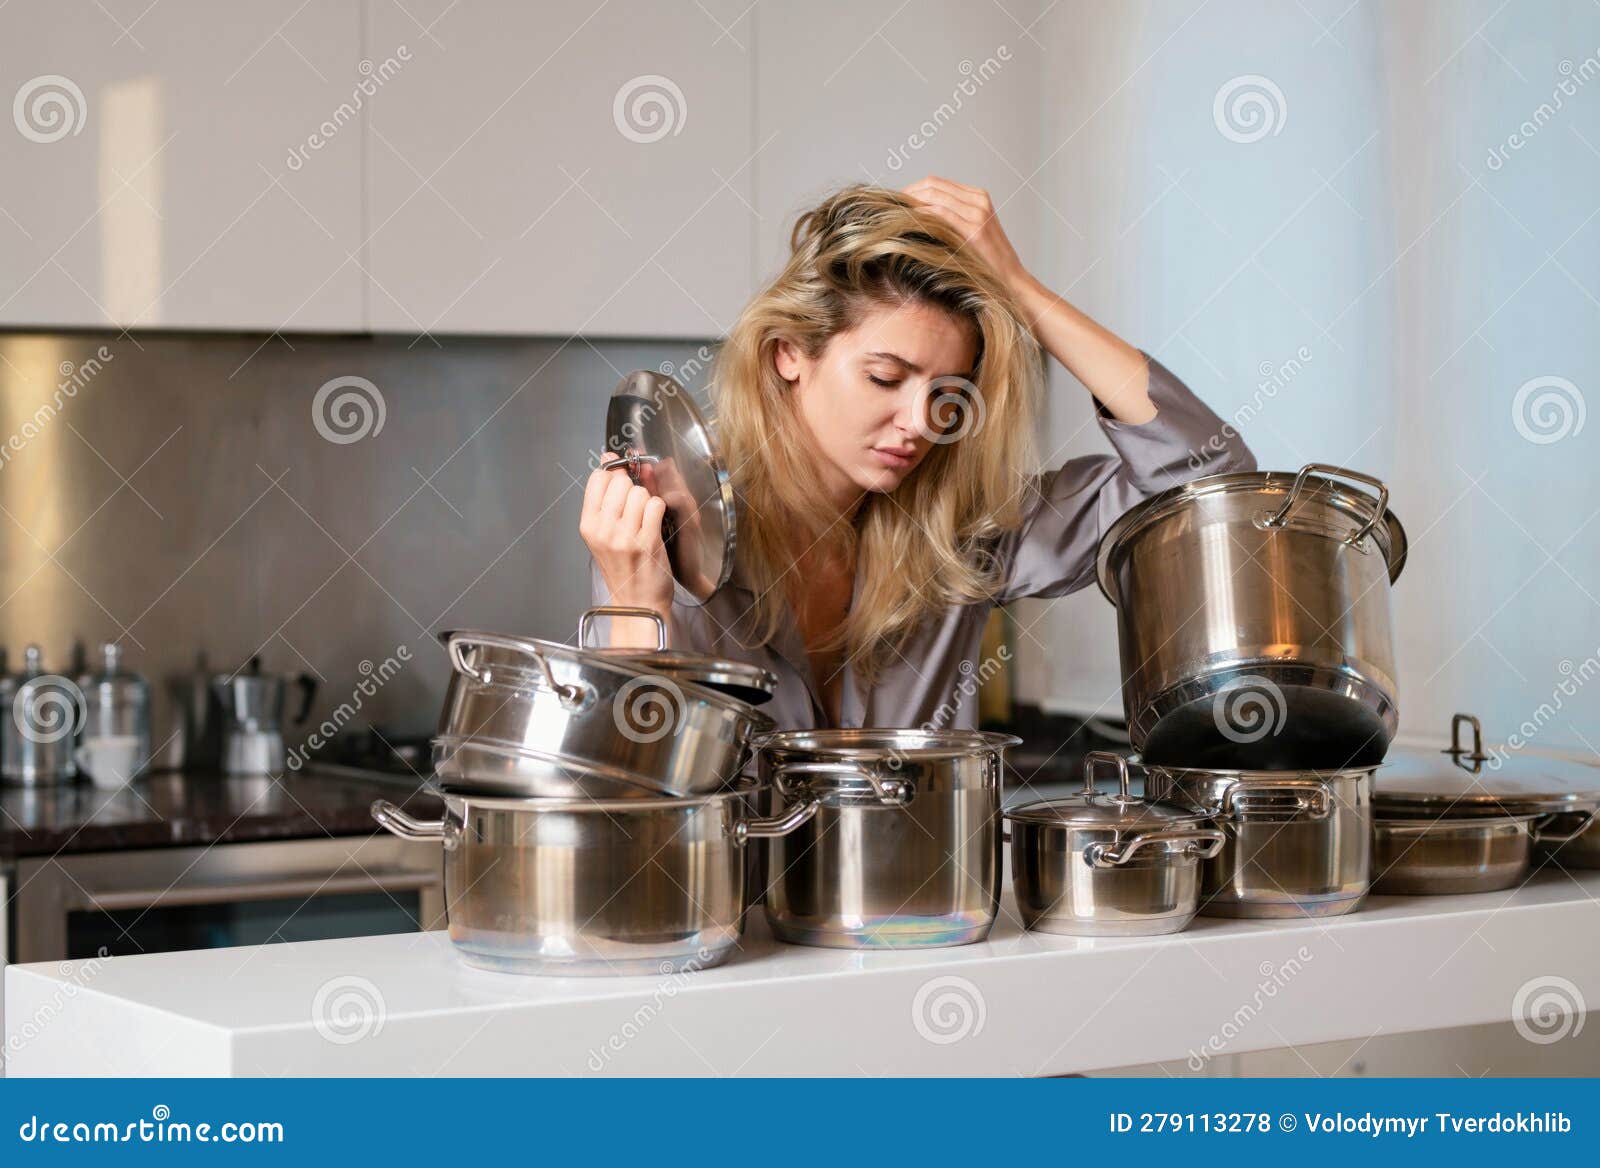 Ama de casa con utensilios de cocina. mujer feliz cocinando comida